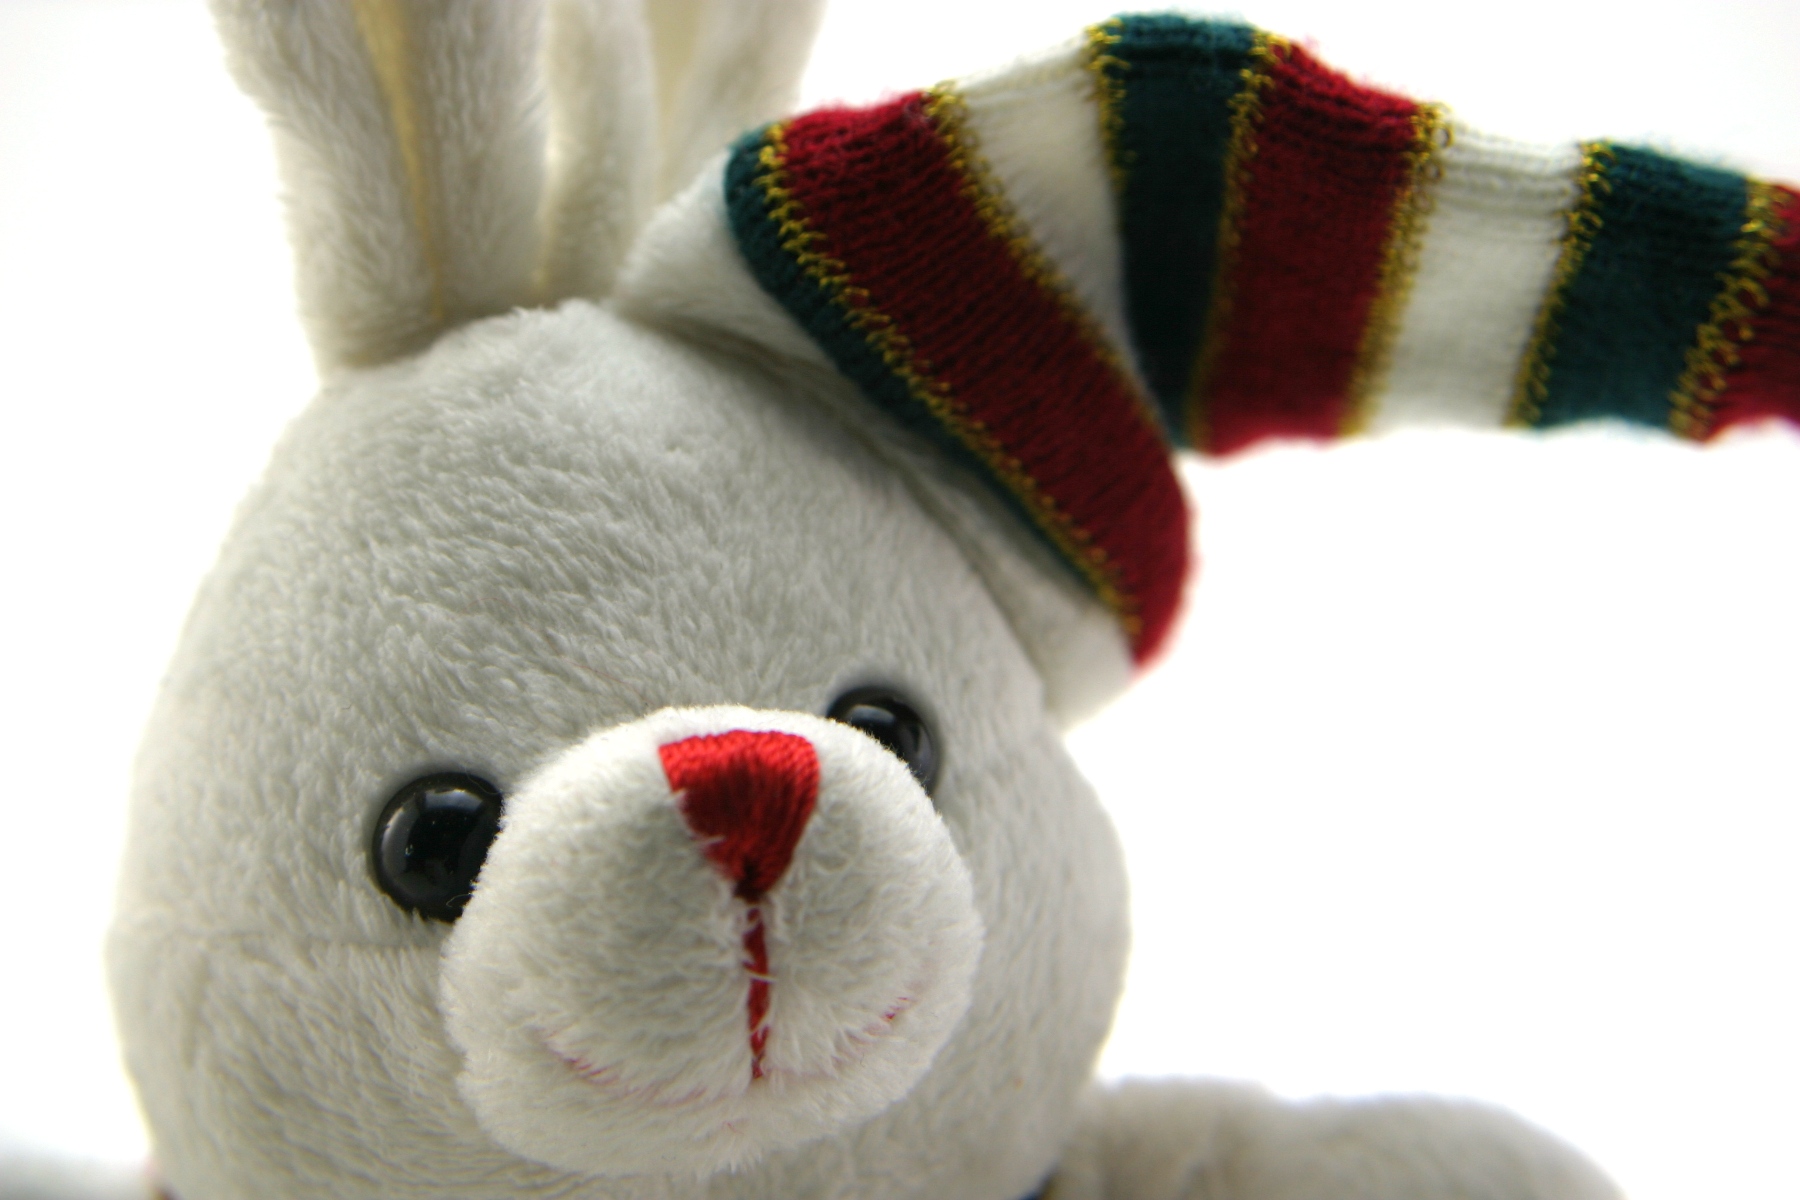 Adorable generic stuffed bunny photo